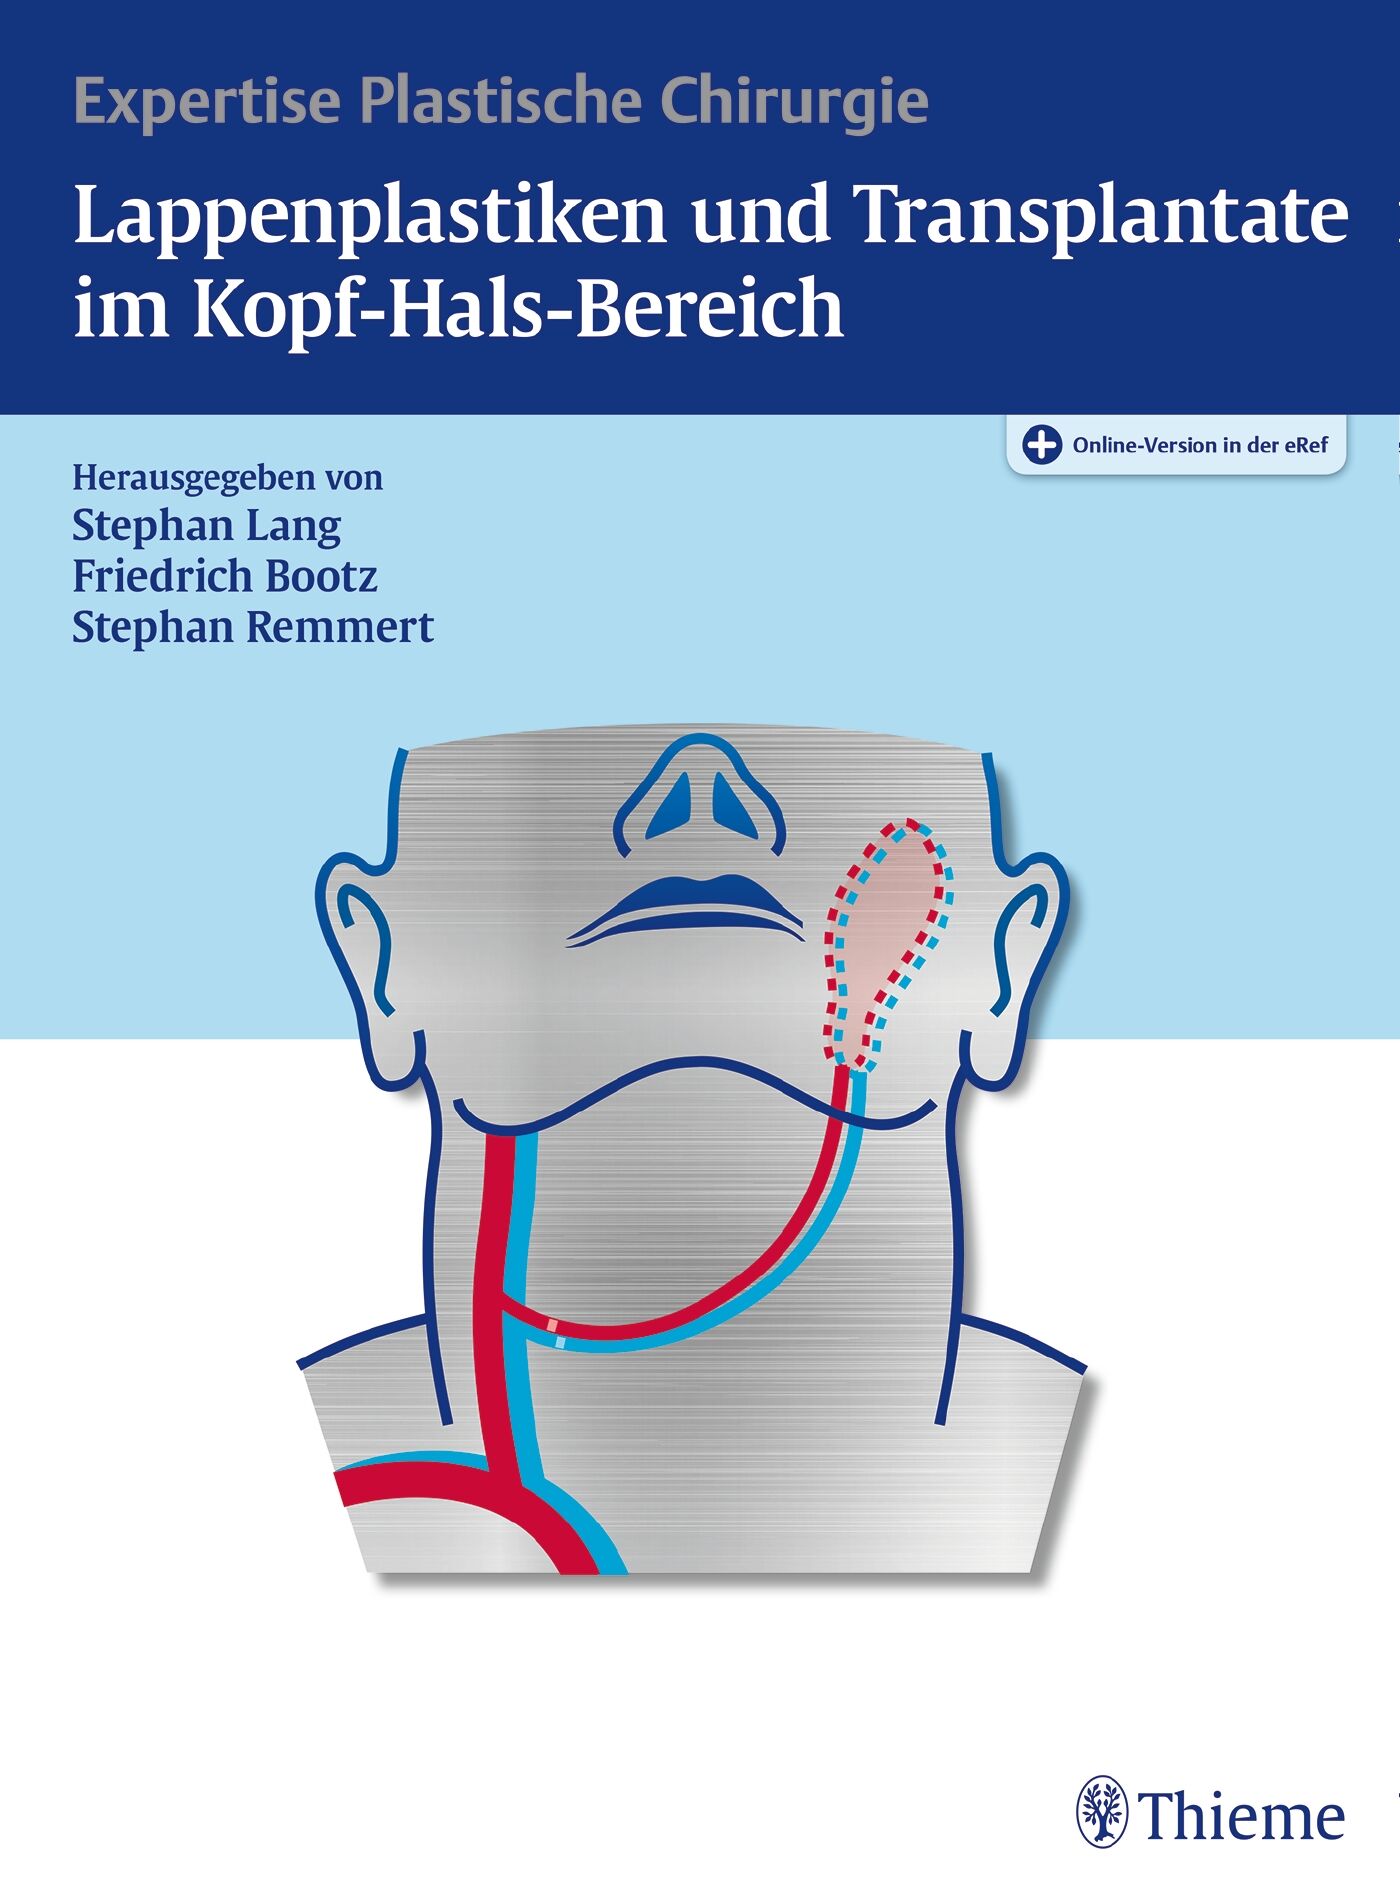 Lappenplastiken und Transplantate im Kopf-Hals-Bereich, 9783131981615